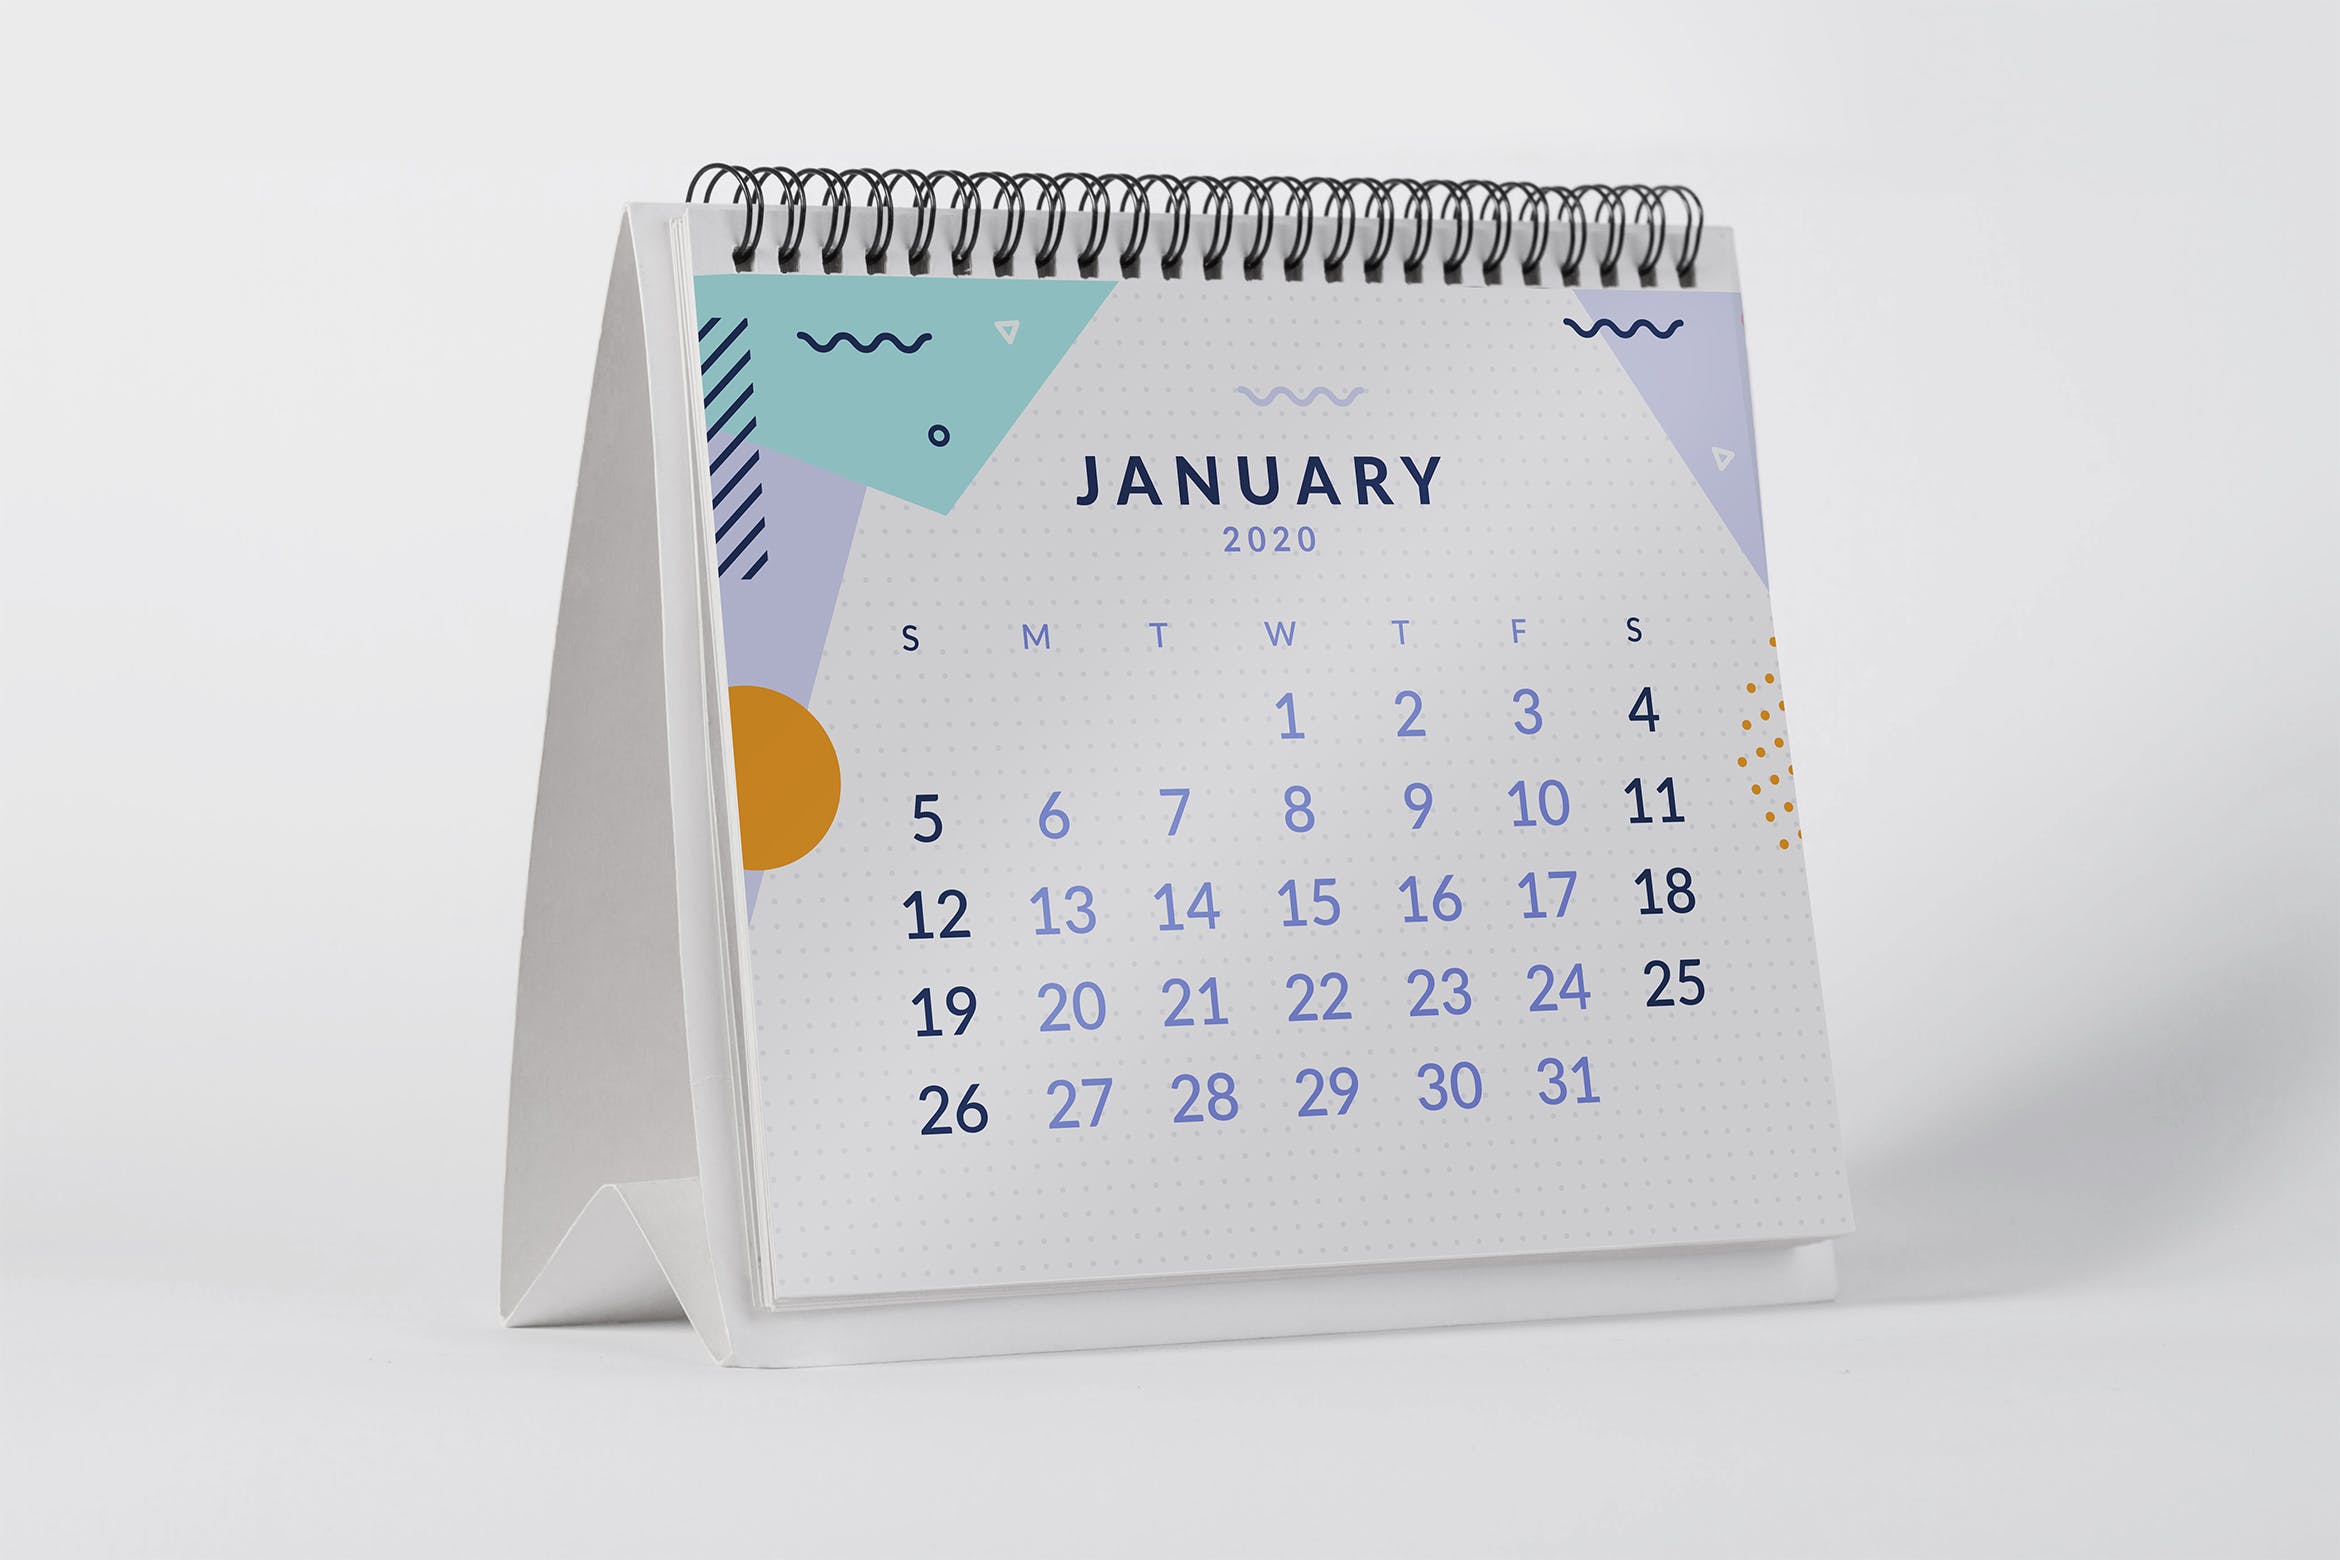 2020年桌面日历设计样机第一素材精选模板 2020 Desktop Calendar Mock Up插图